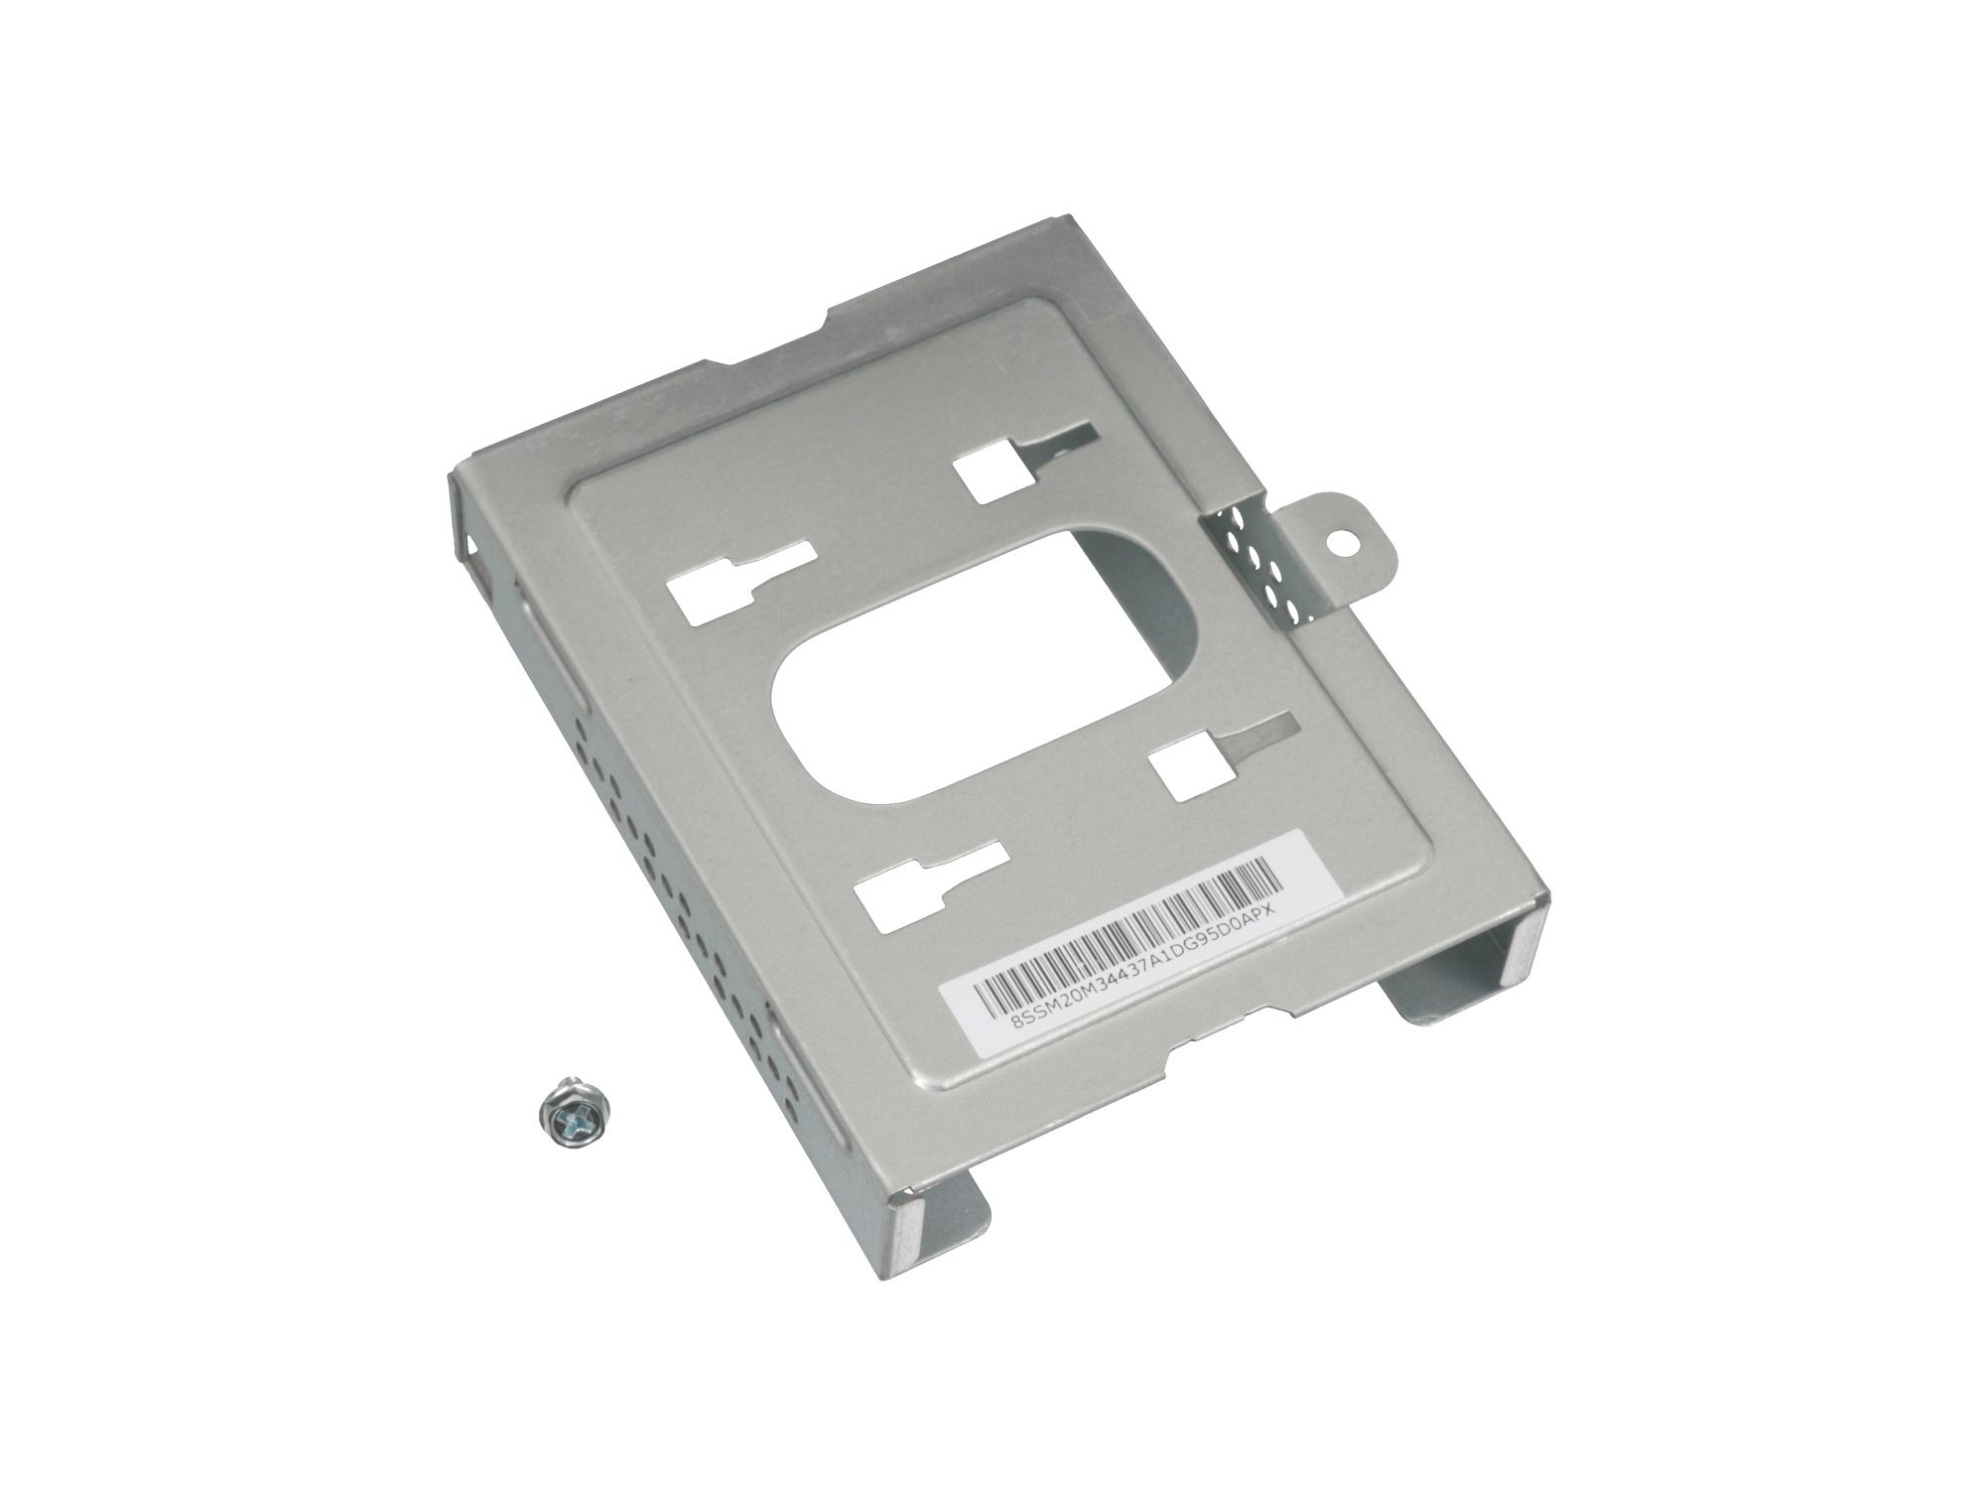 Festplatten-Einbaurahmen für den 1. Festplatten Schacht Original für Lenovo ThinkCentre M910S (10MK/10ML/10QM)